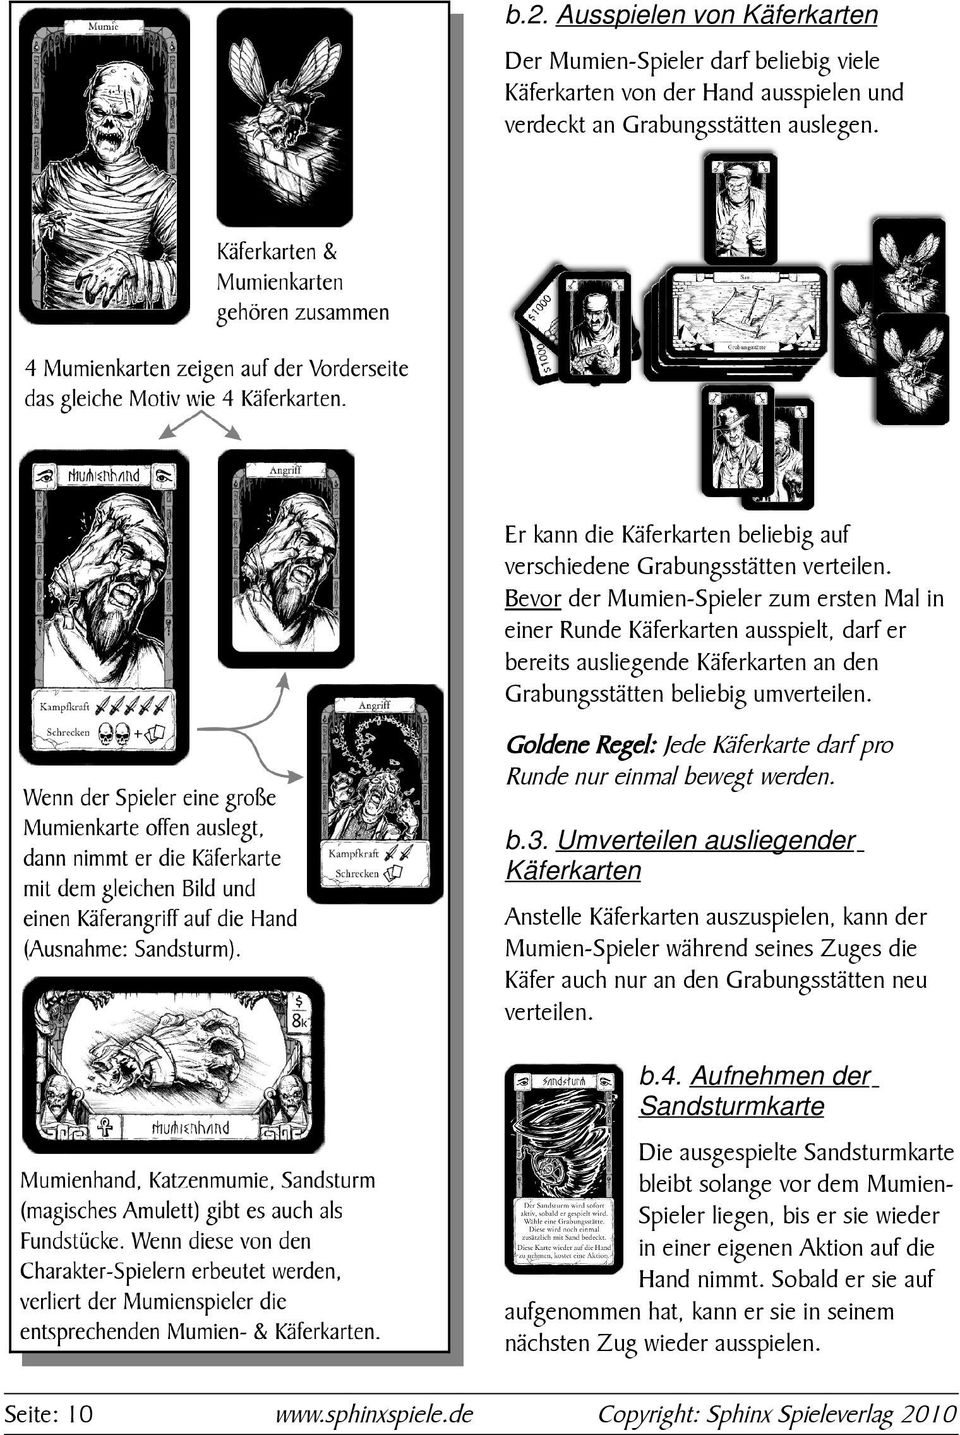 Bevor der Mumien-Spieler zum ersten Mal in einer Runde Käferkarten ausspielt, darf er bereits ausliegende Käferkarten an den Grabungsstätten beliebig umverteilen.